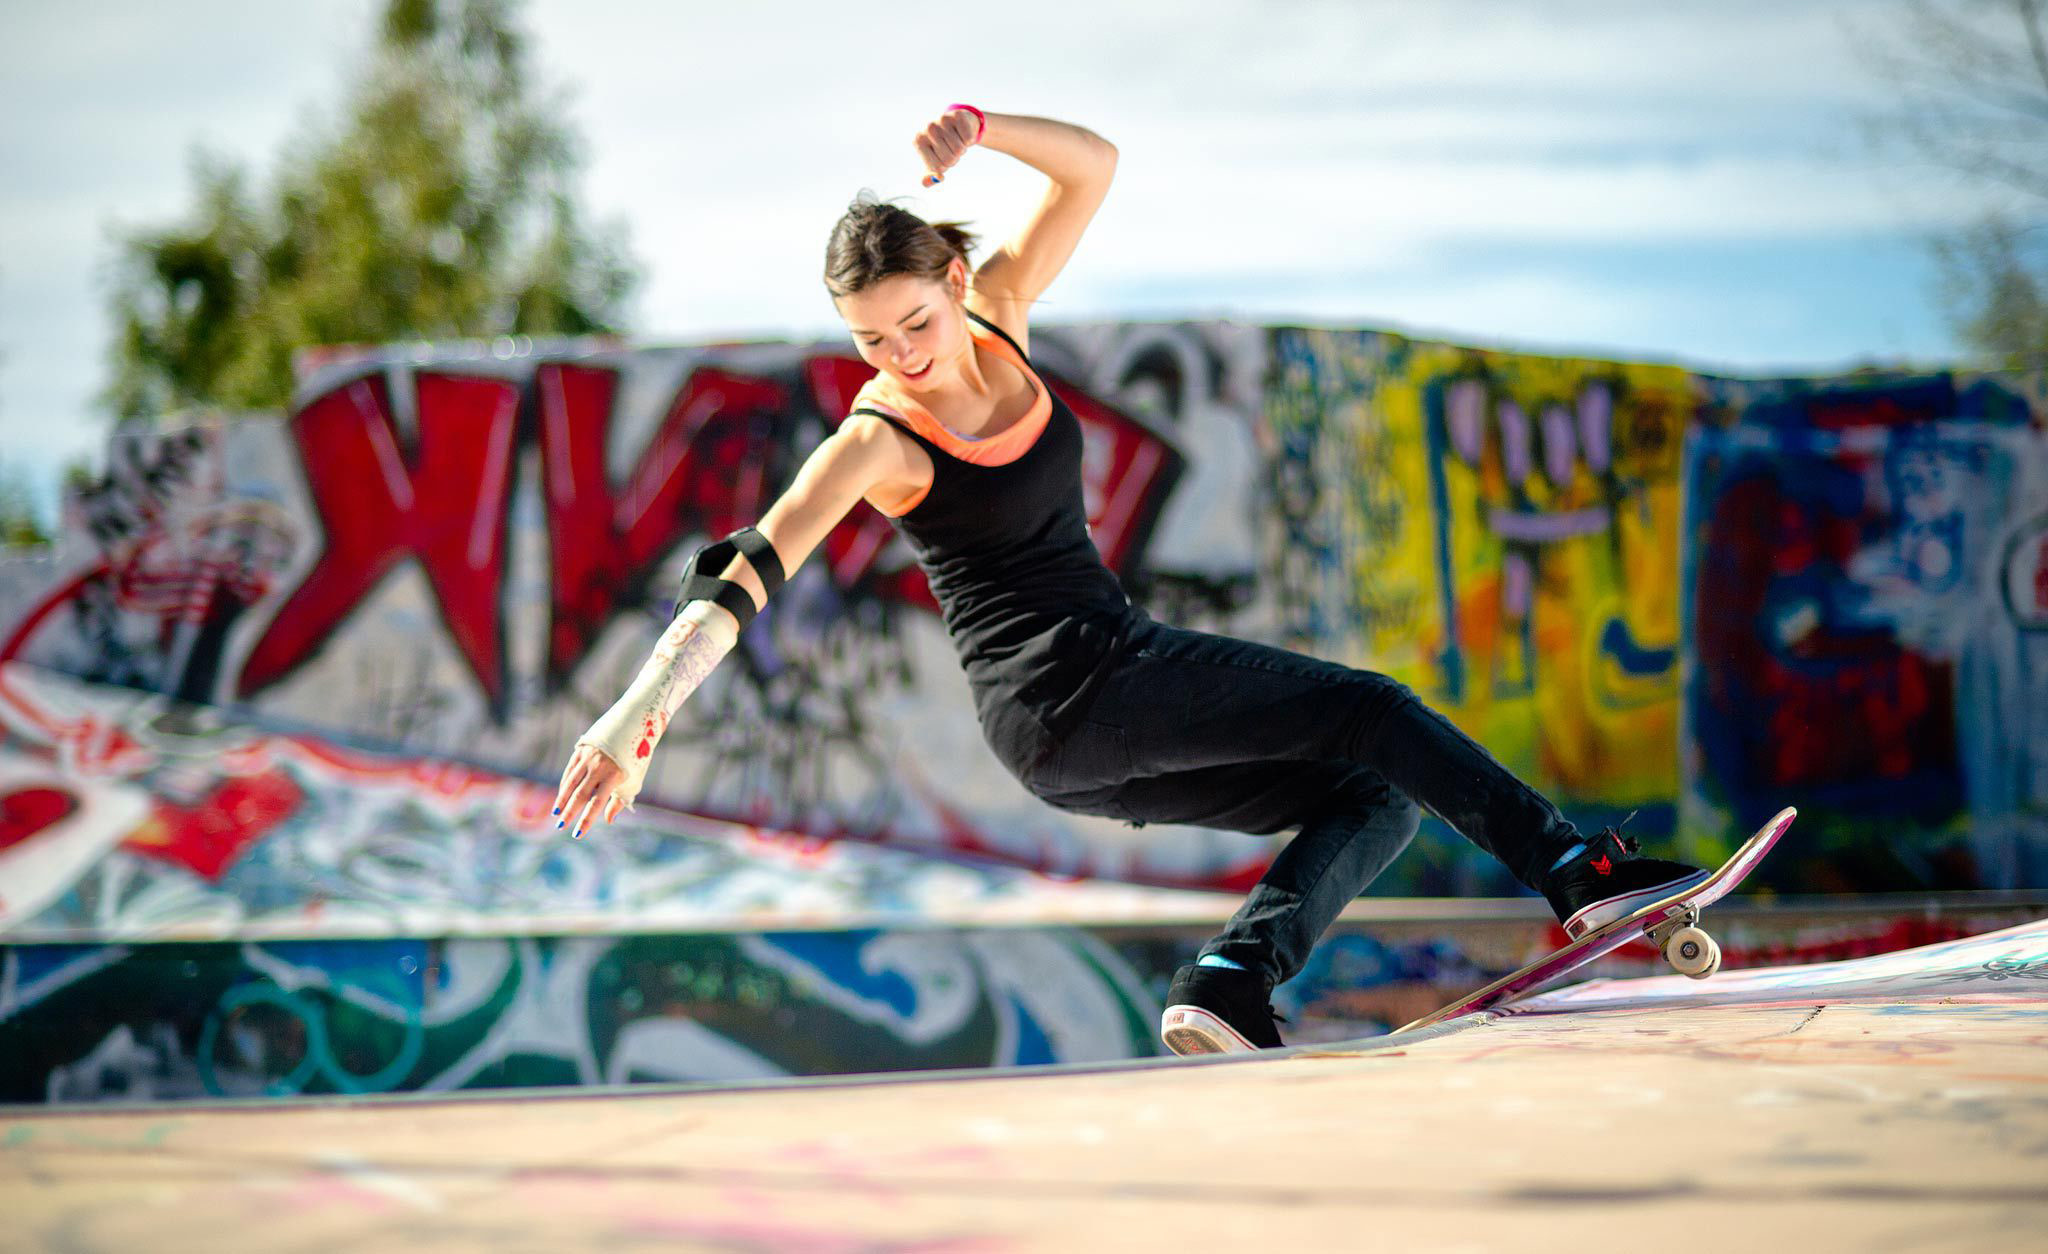 girl skateboards wallpaper,skateboarder,skateboarding,extreme sport,sports,recreation